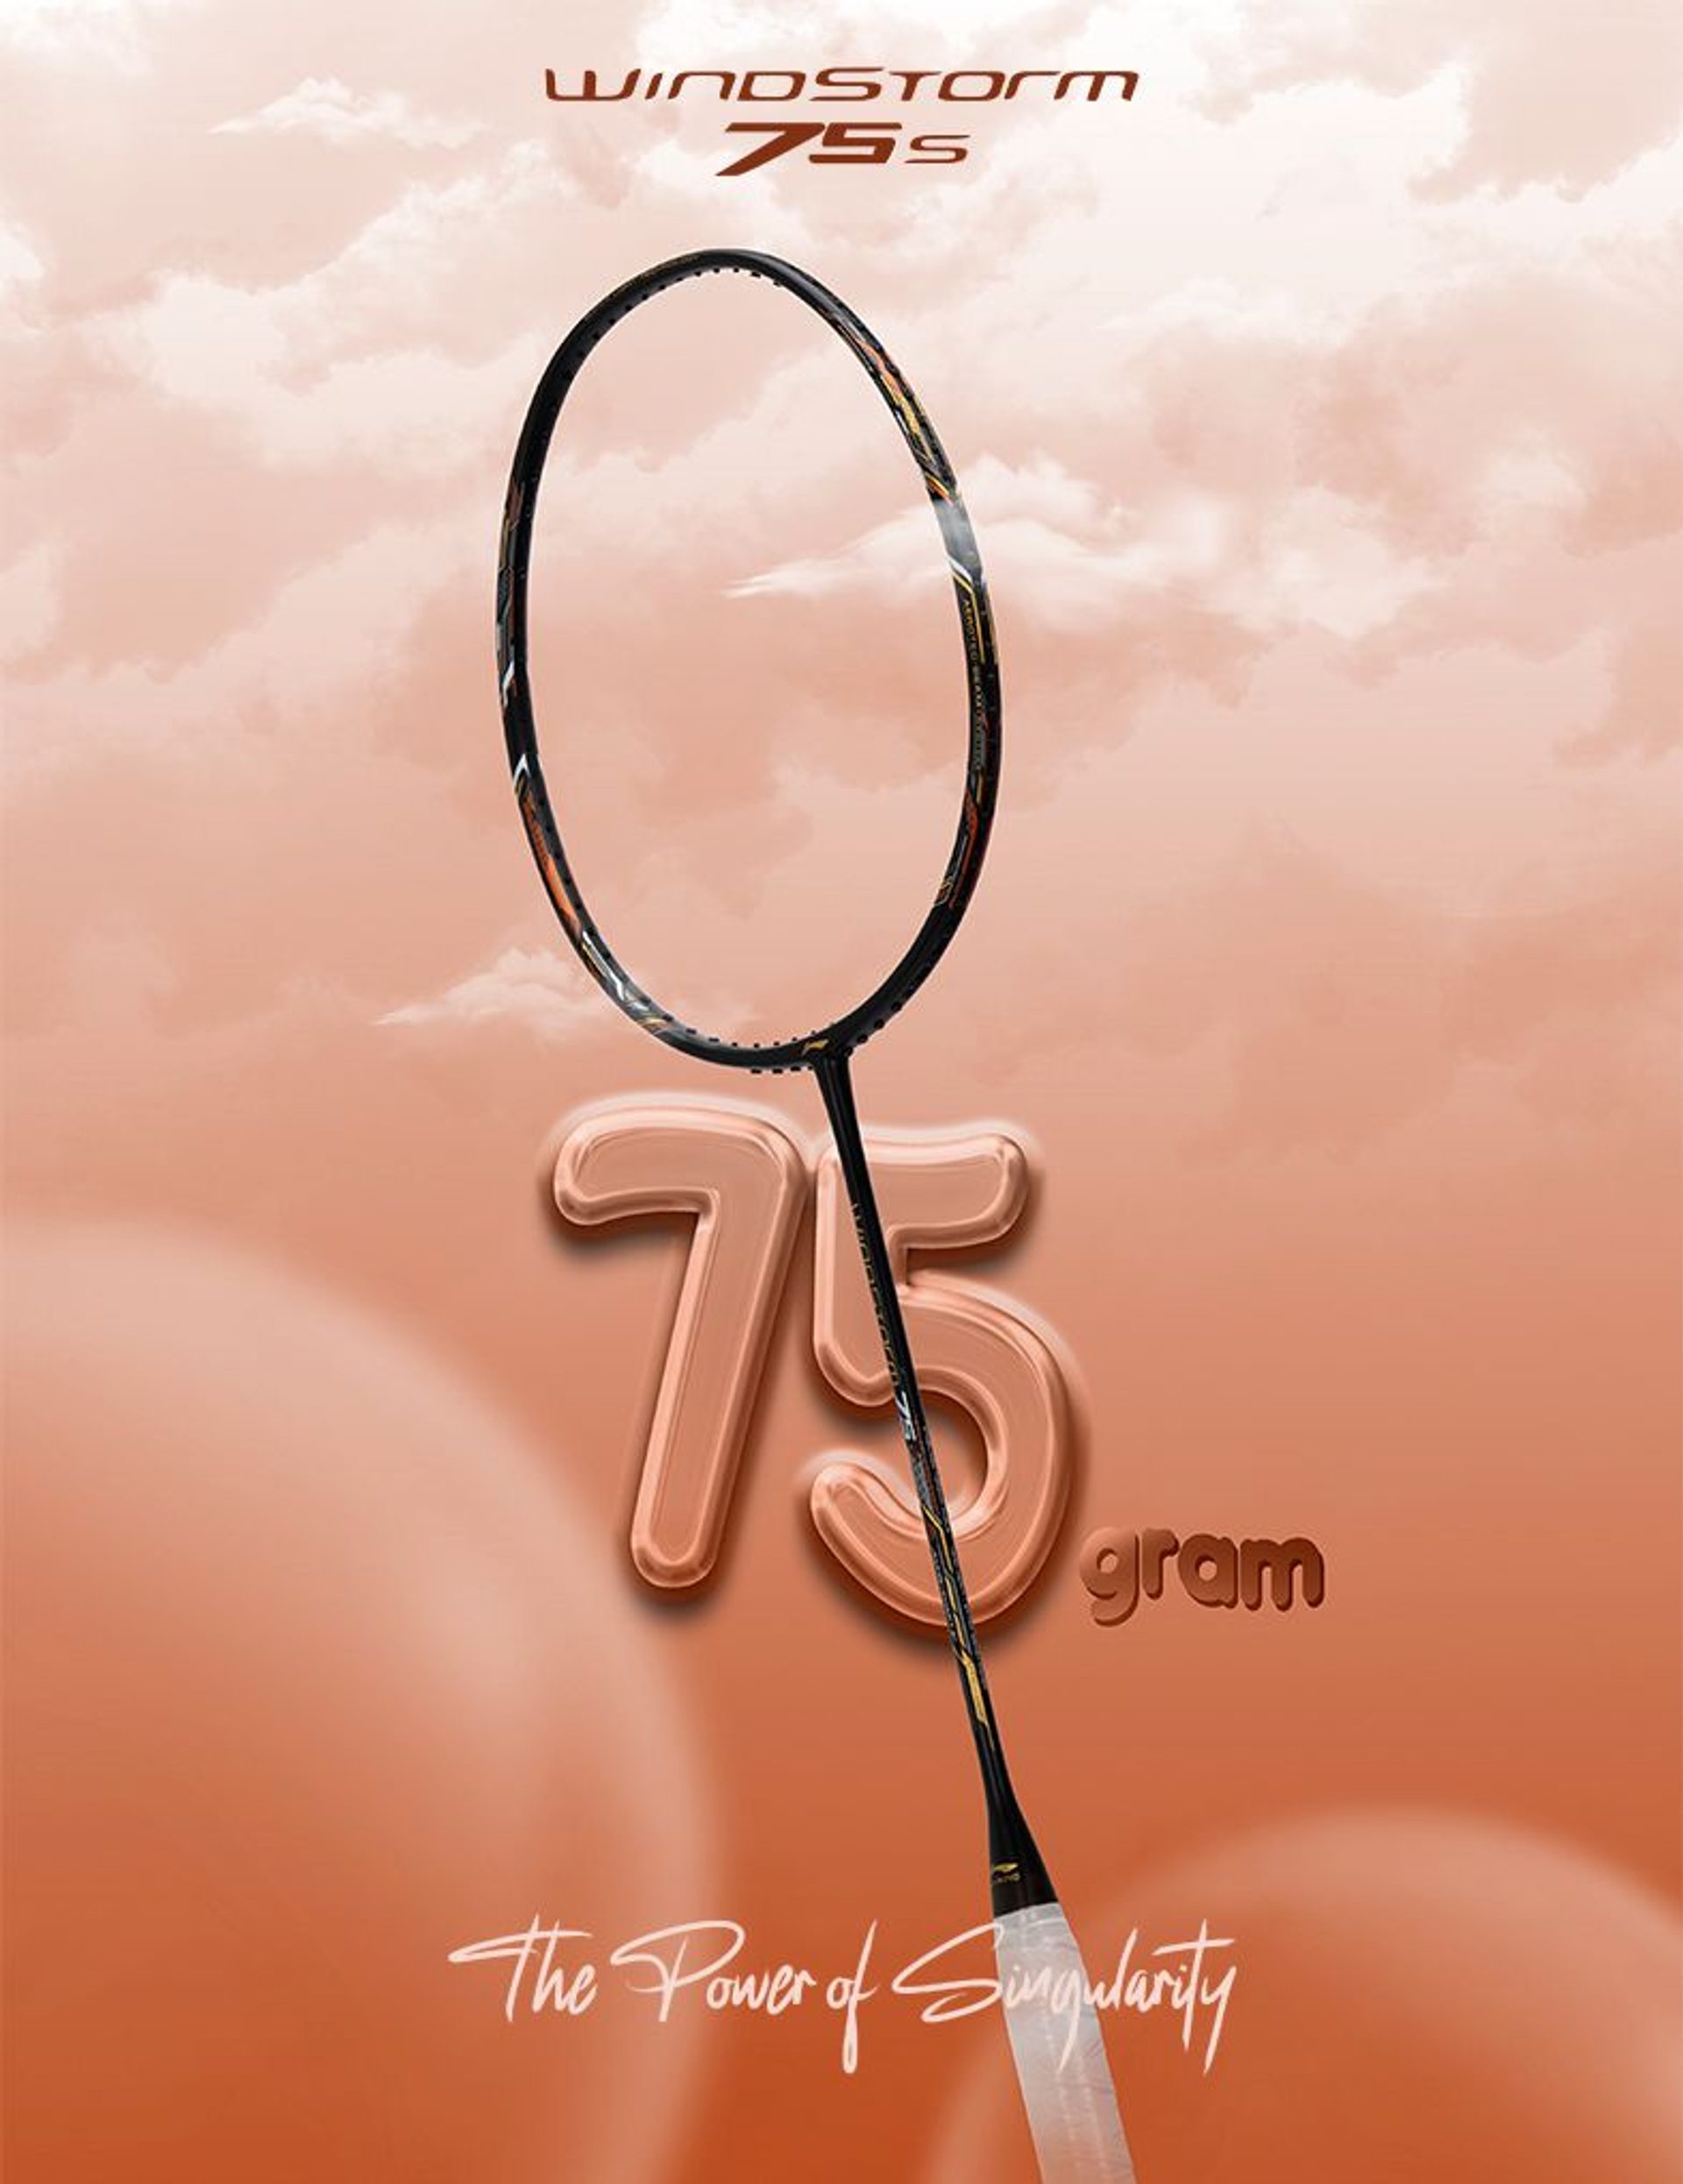 Windstorm 75 S - Badminton Racket